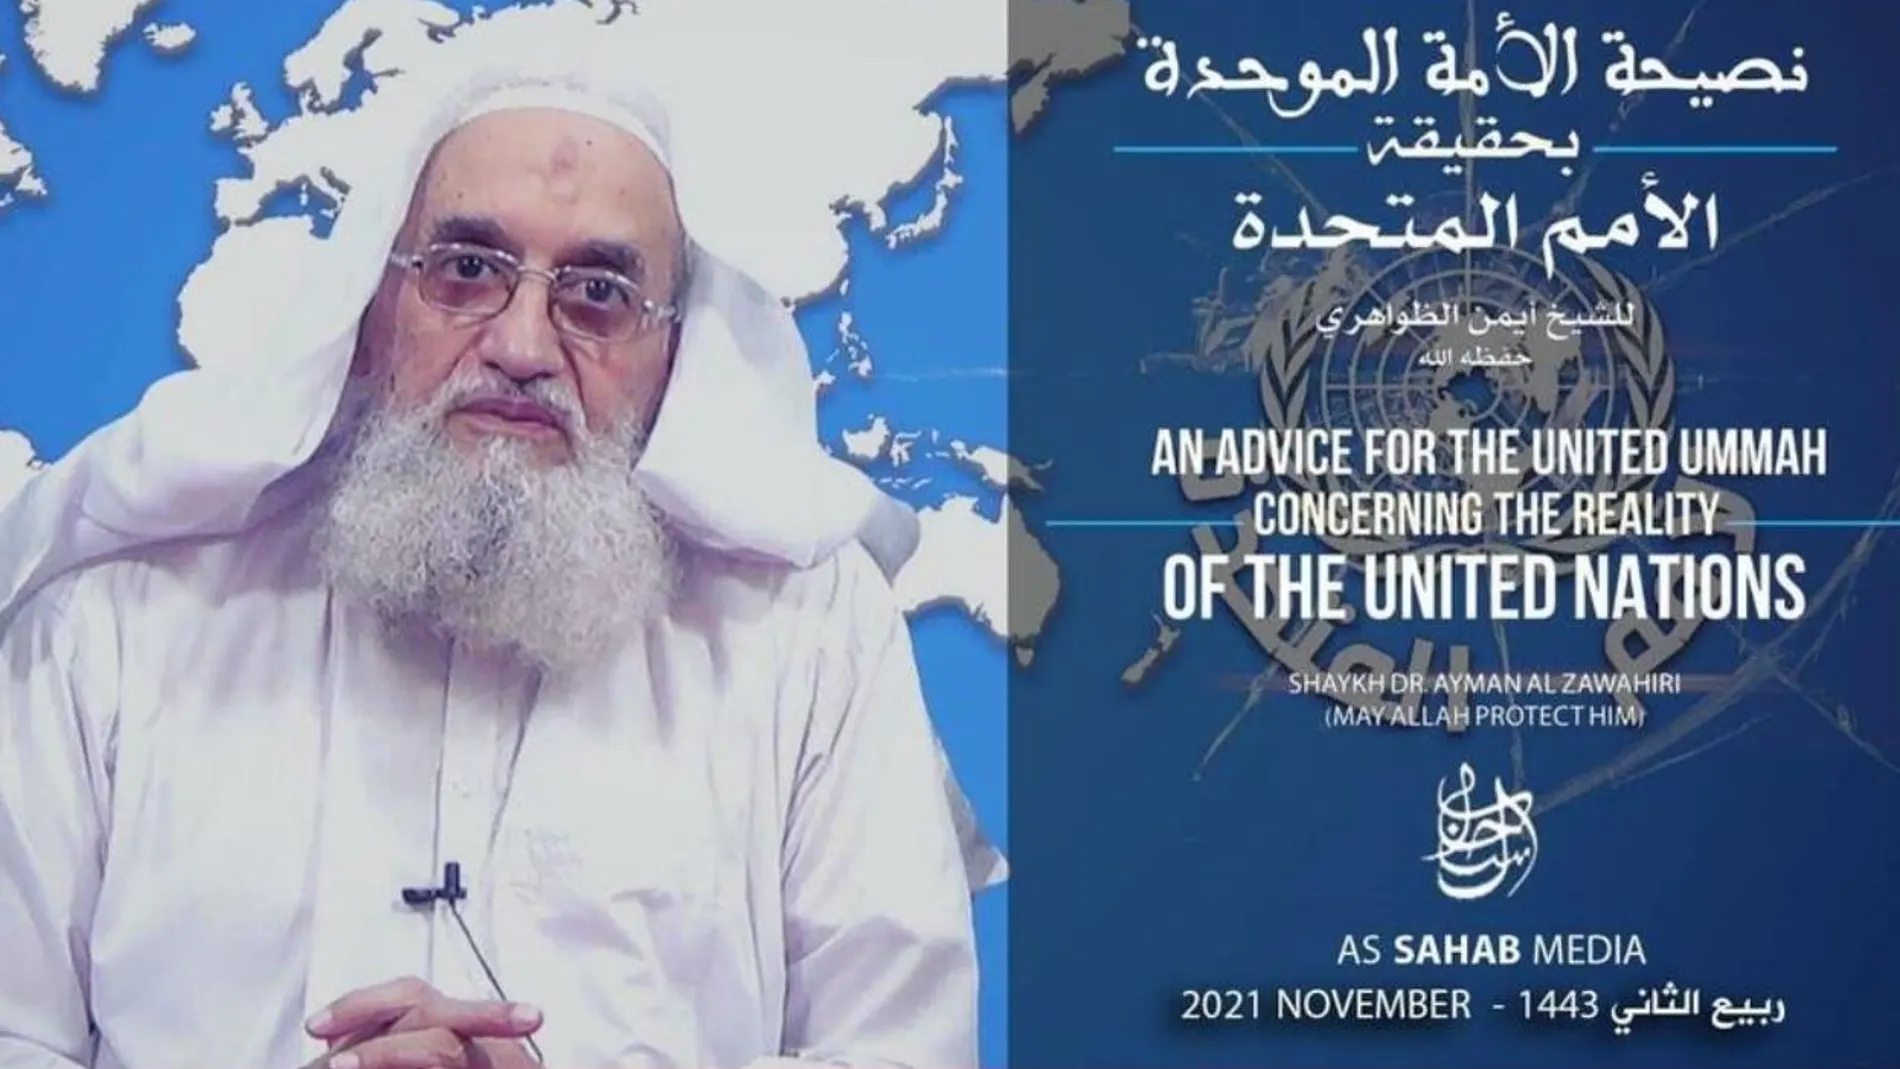 Imagen difundida por Al Qaeda de la intervención de Zawahiri